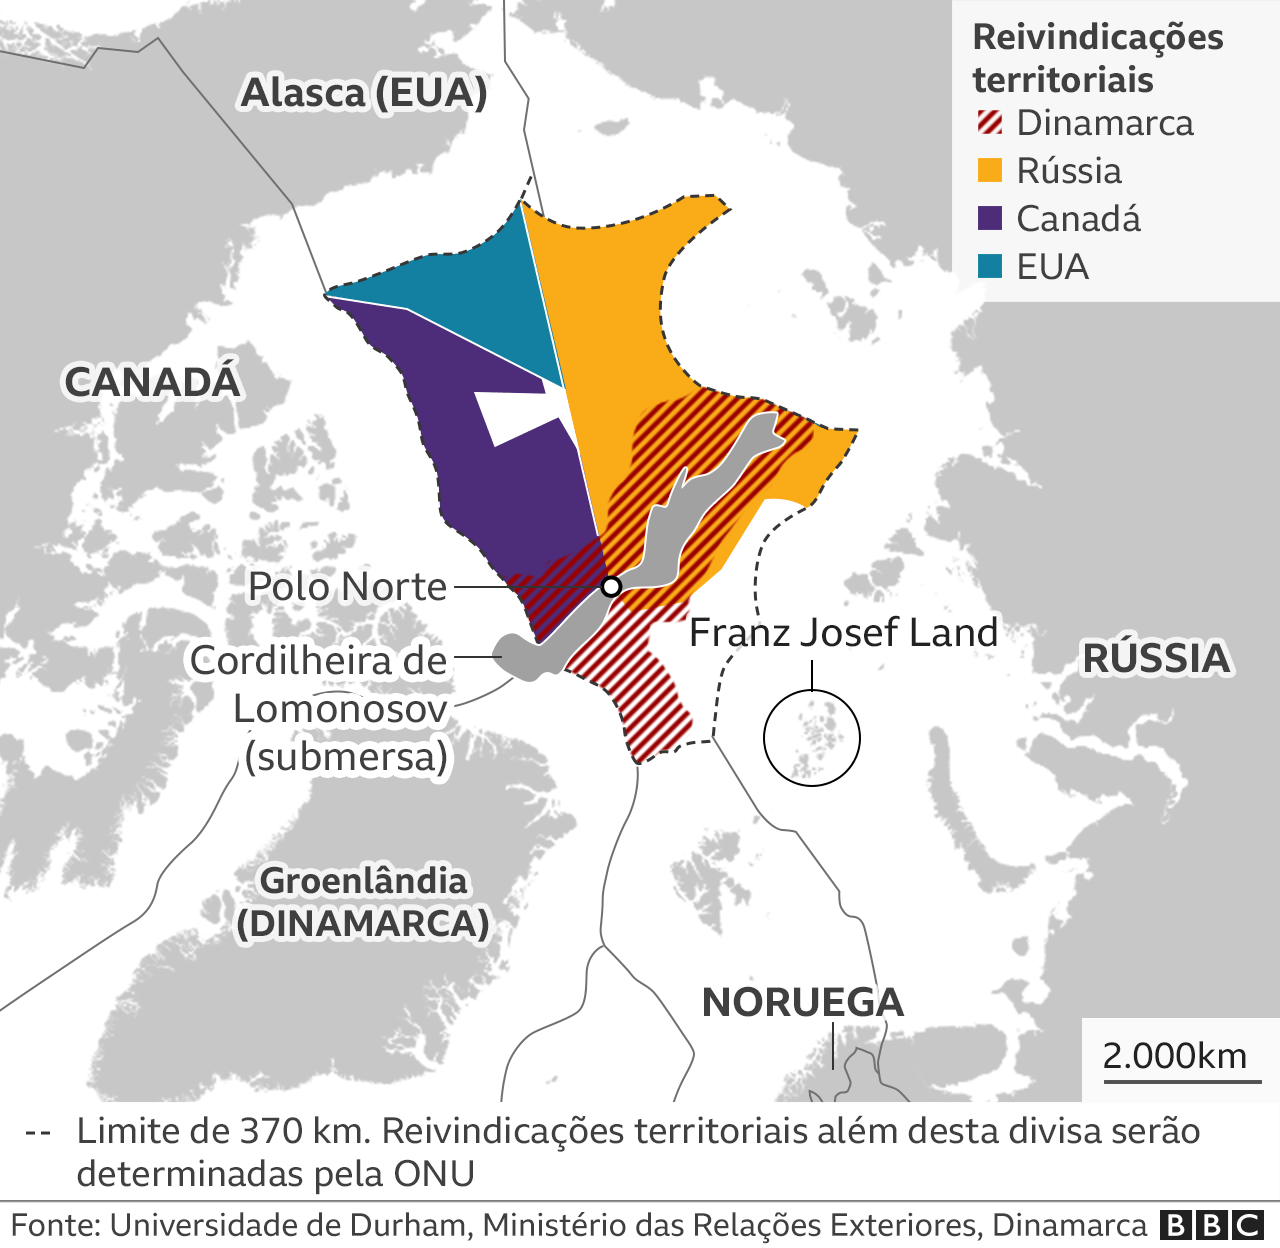 Mapa mostra reivindicações territoriais no Ártico